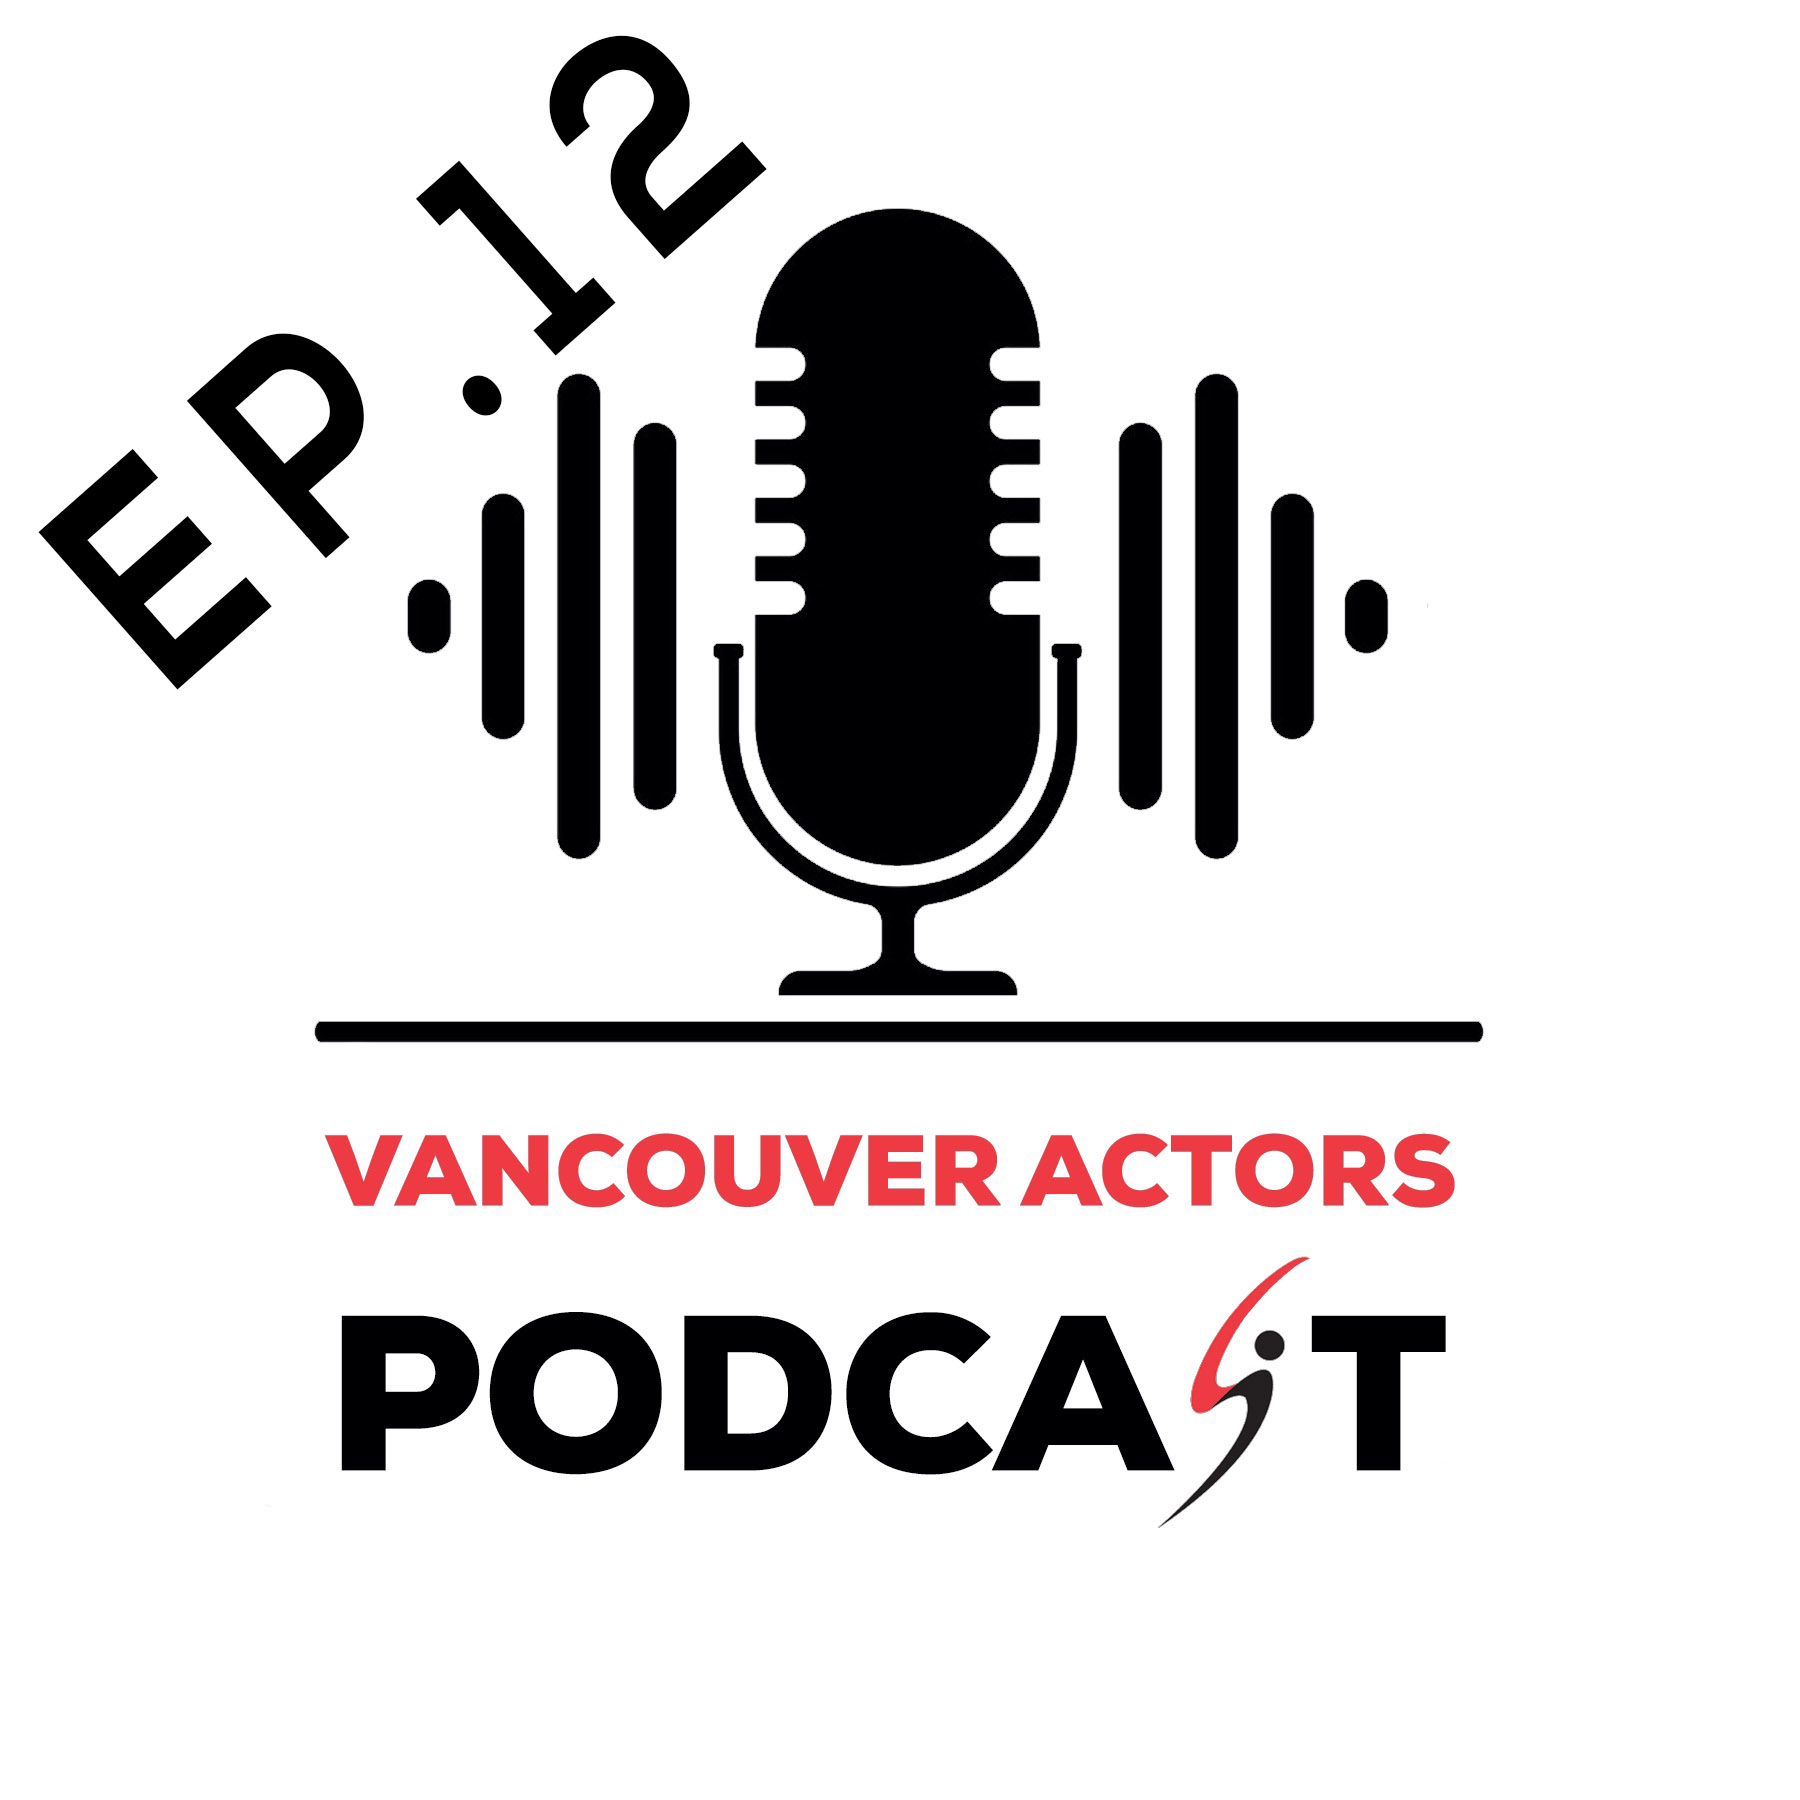 Vancouver Actors Podcast Michael Coleman Ep. 12